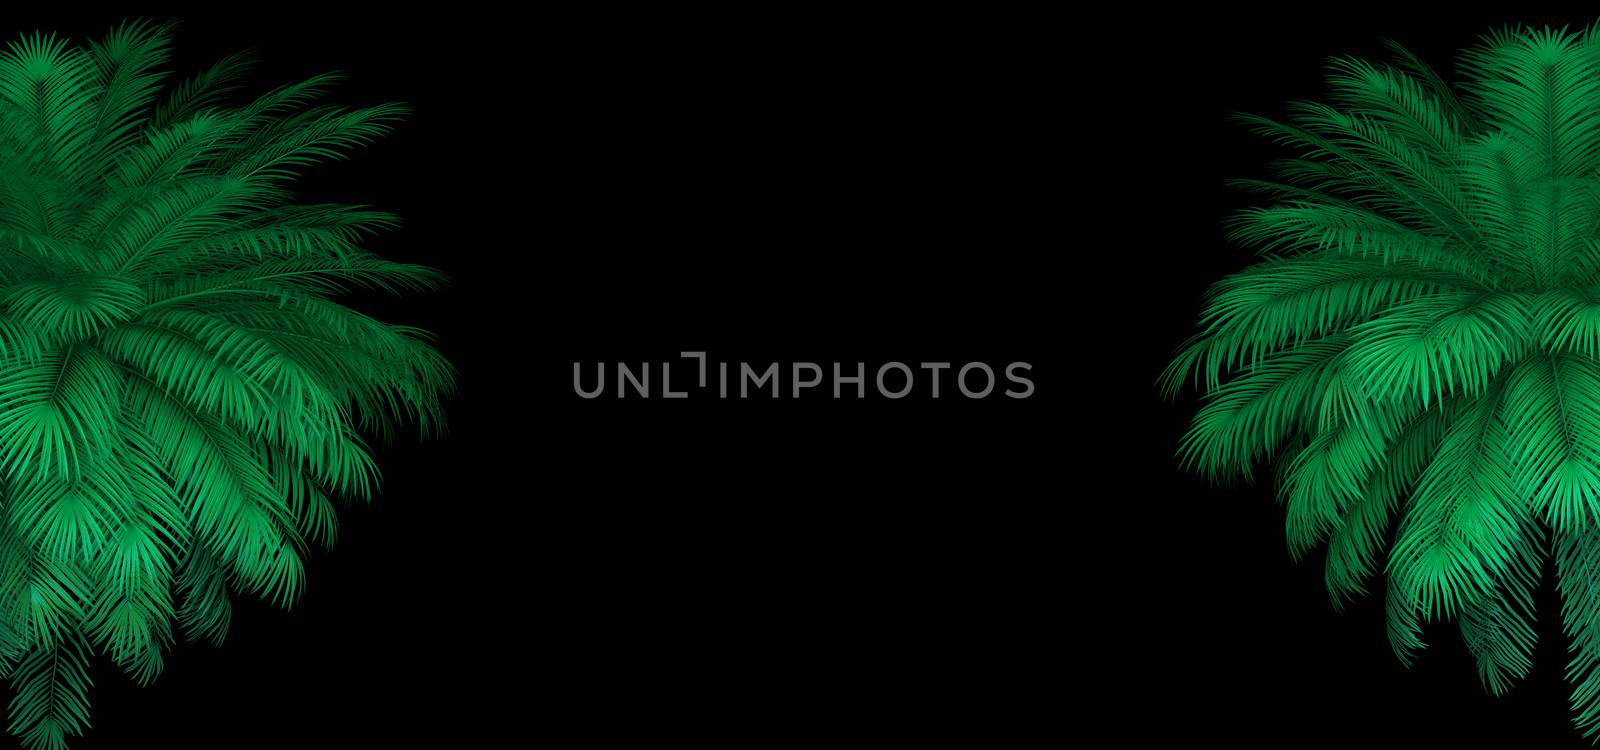 3d render of neon palm leaves on the black. Banner design. Retrowave, synthwave, vaporwave illustration. by Shanvood